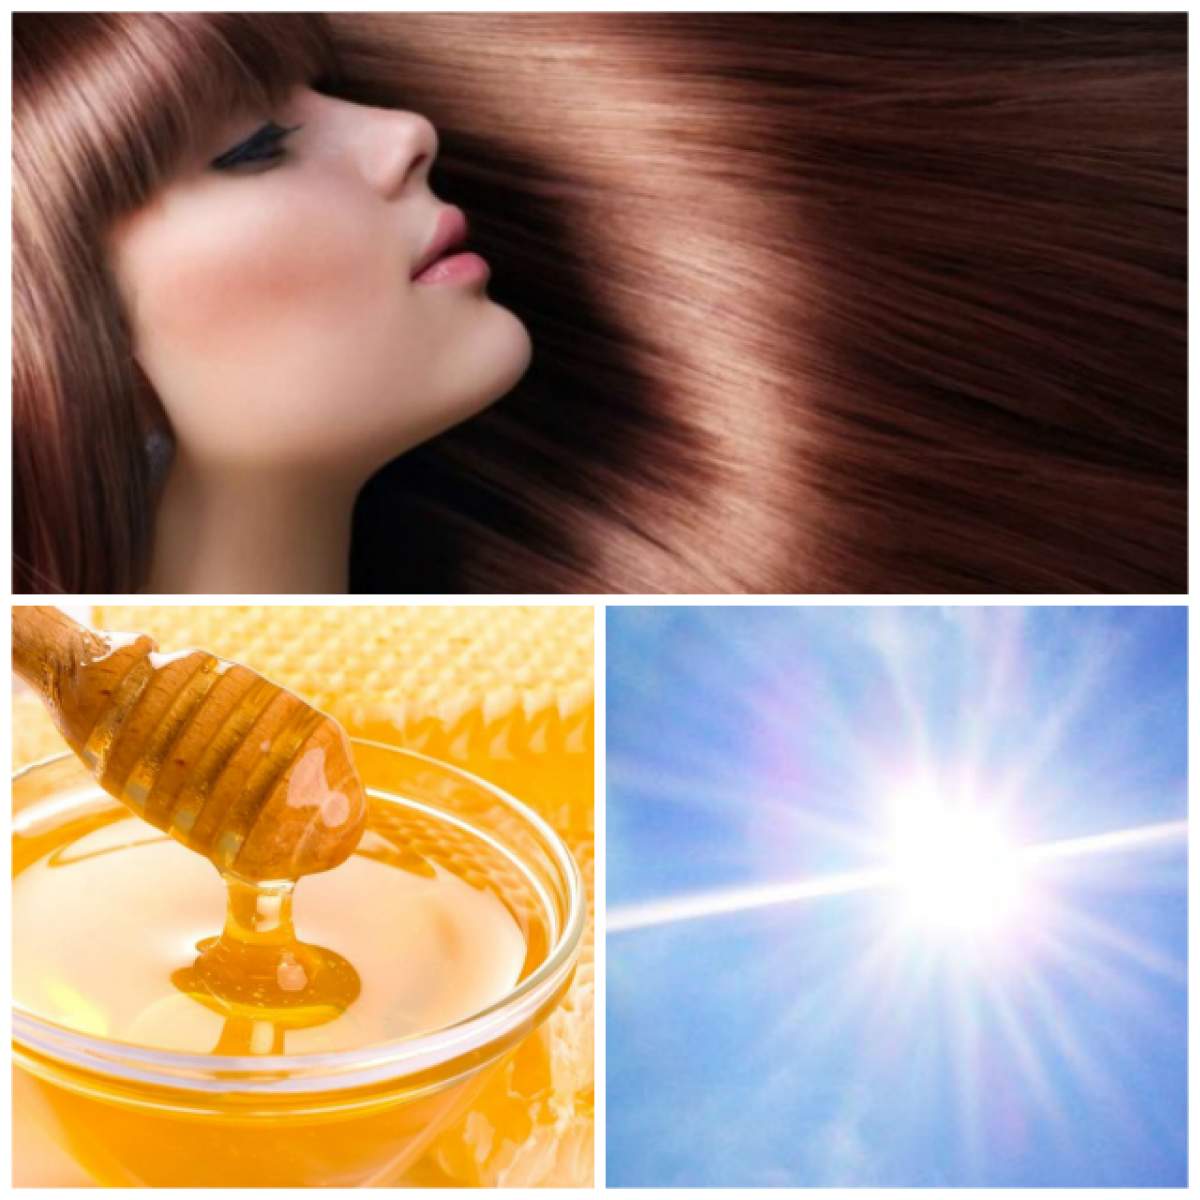 ÎNTREBAREA ZILEI – SÂMBĂTĂ / Cum îți protejezi părul de efectele nocive ale soarelui? Masca naturală pe care o poți prepara cu trei ingrediente